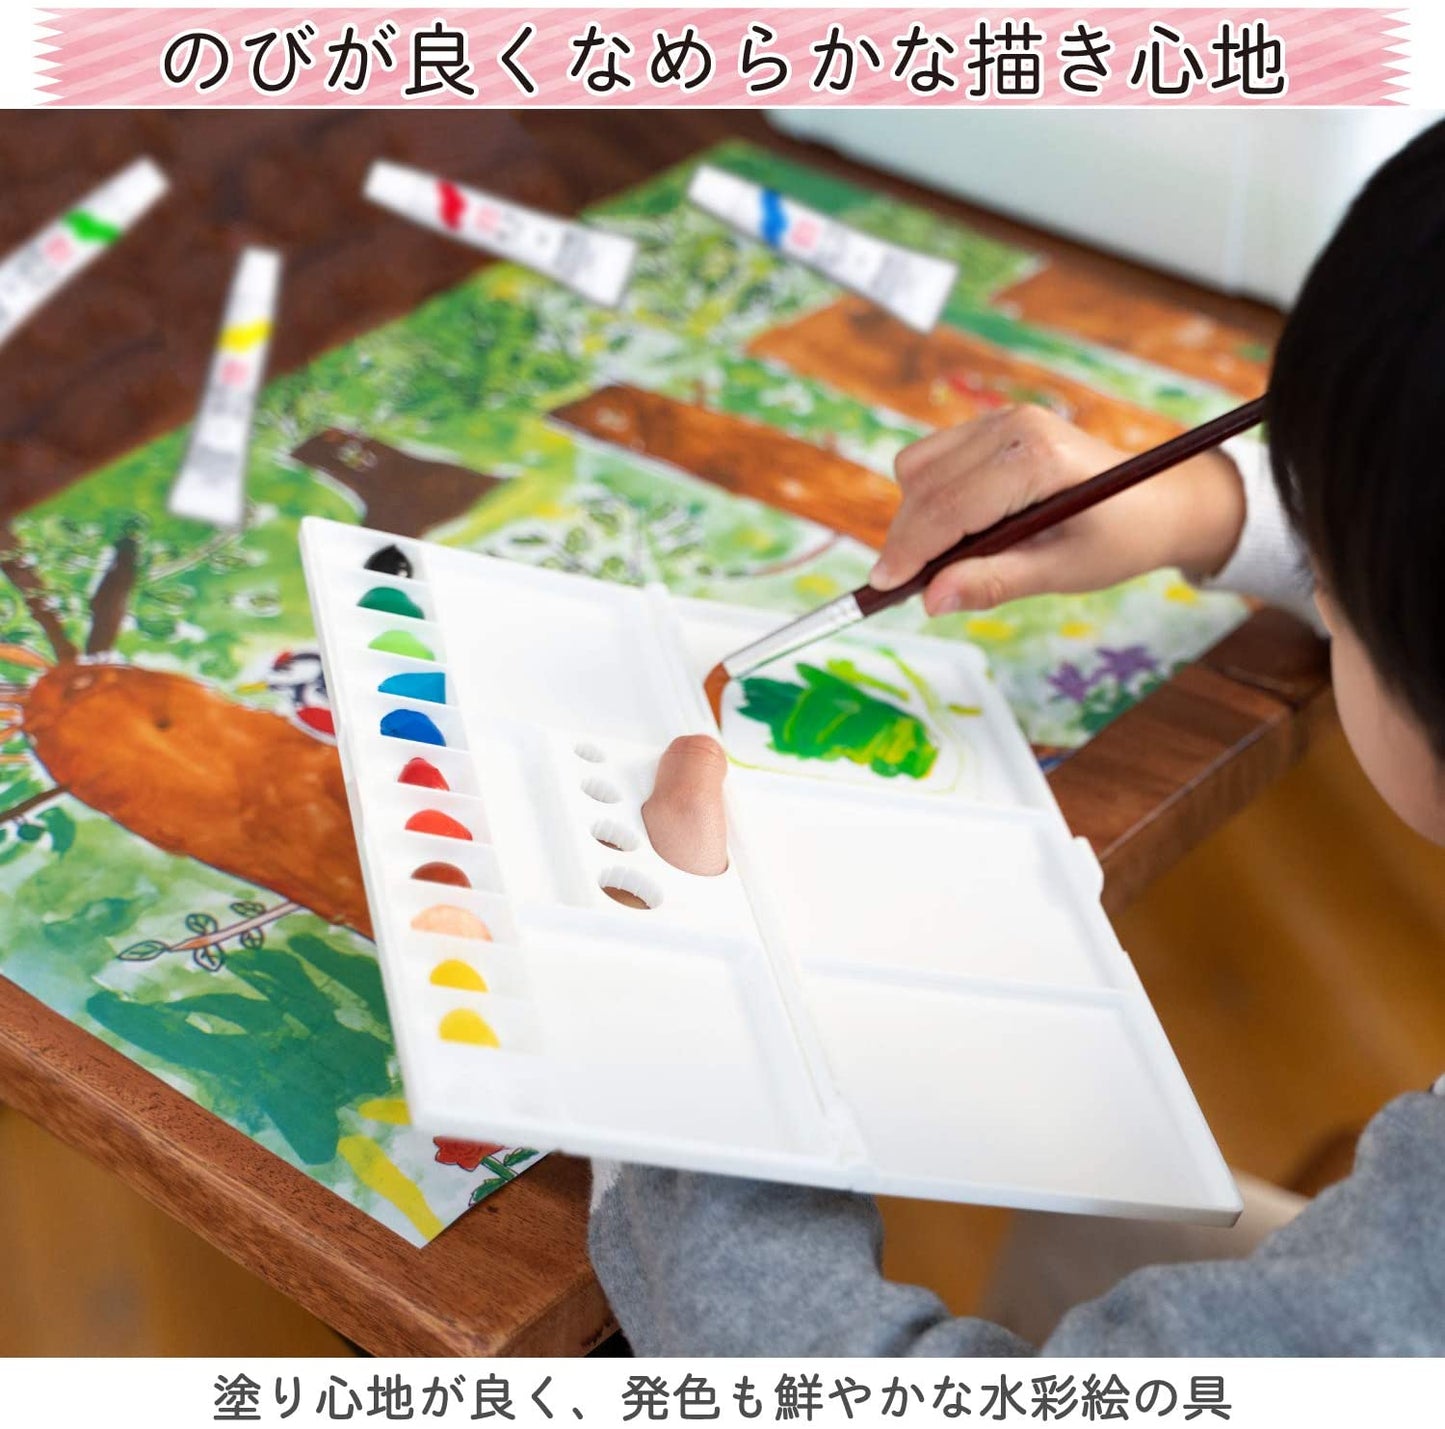 SAKURA Mat Watercolor 15 colors (Made in Japan)